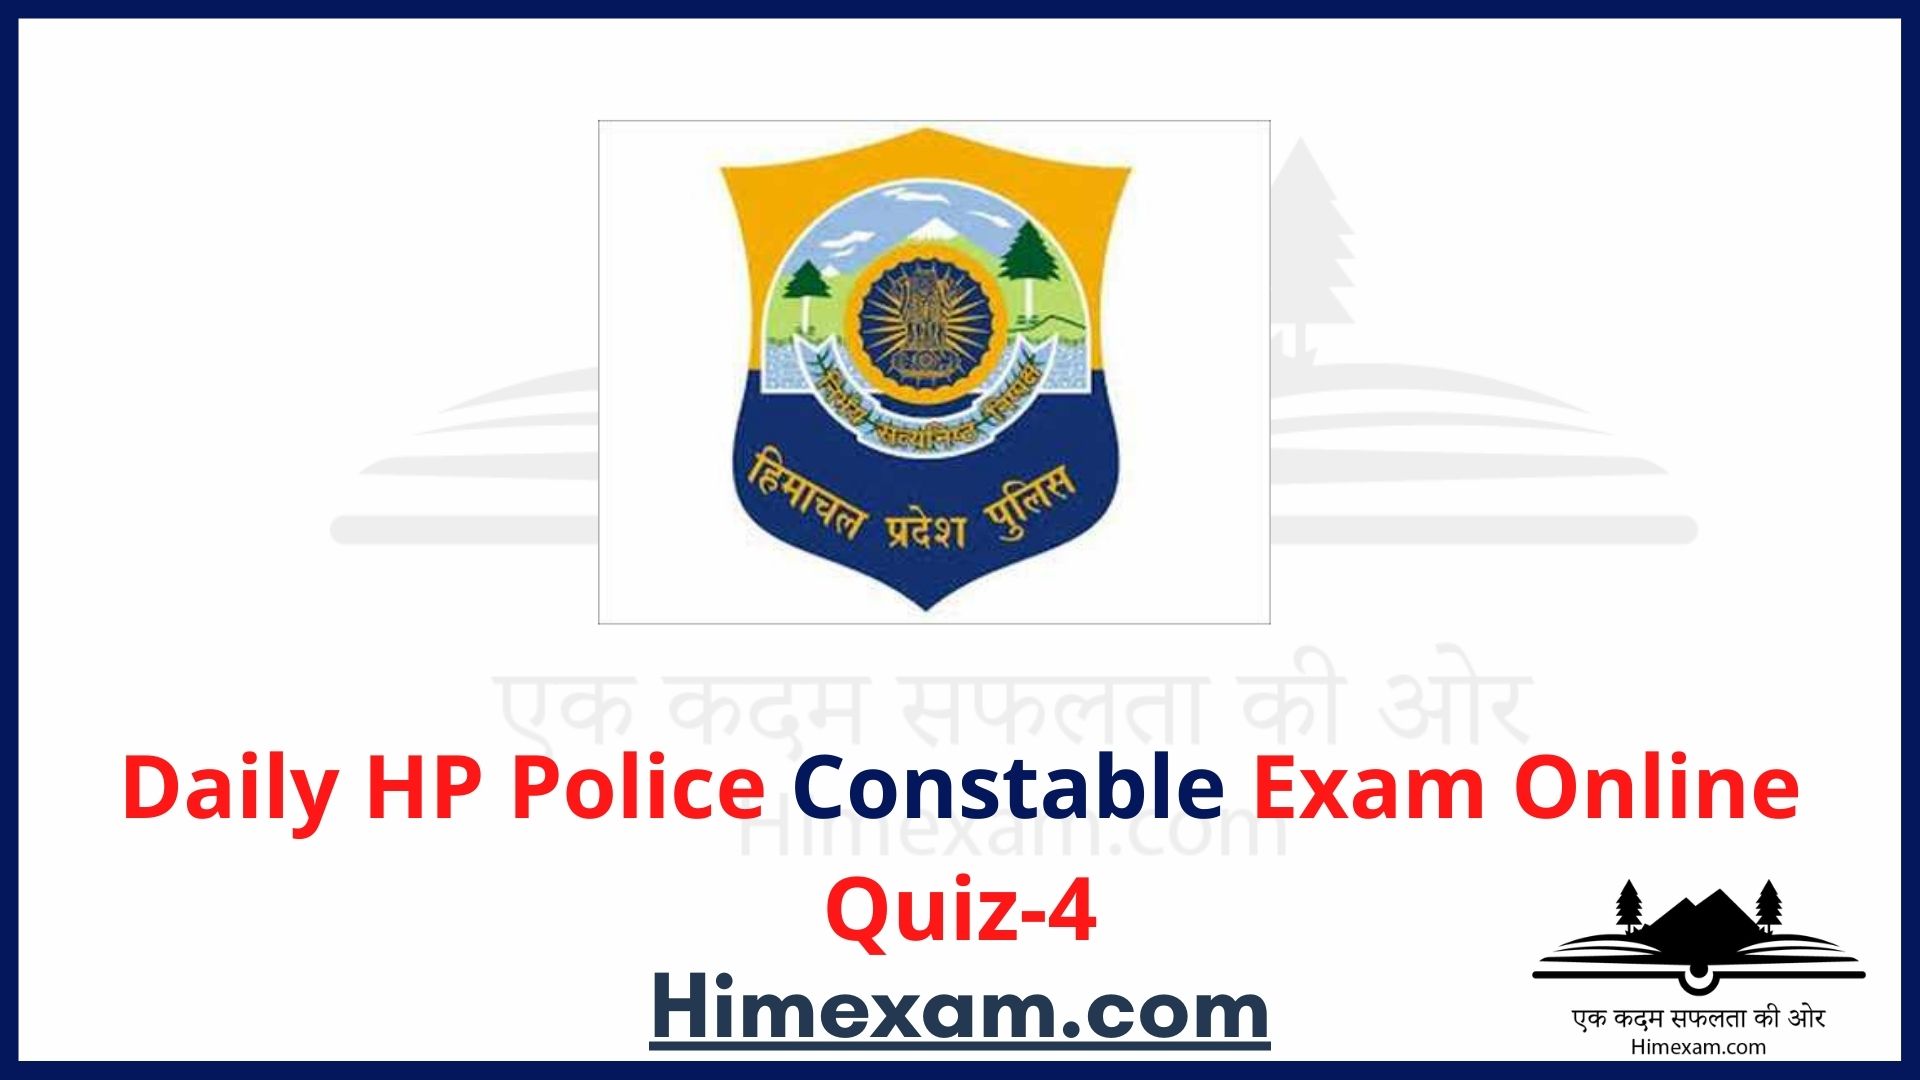 Daily HP Police Constable Exam Online Quiz-4